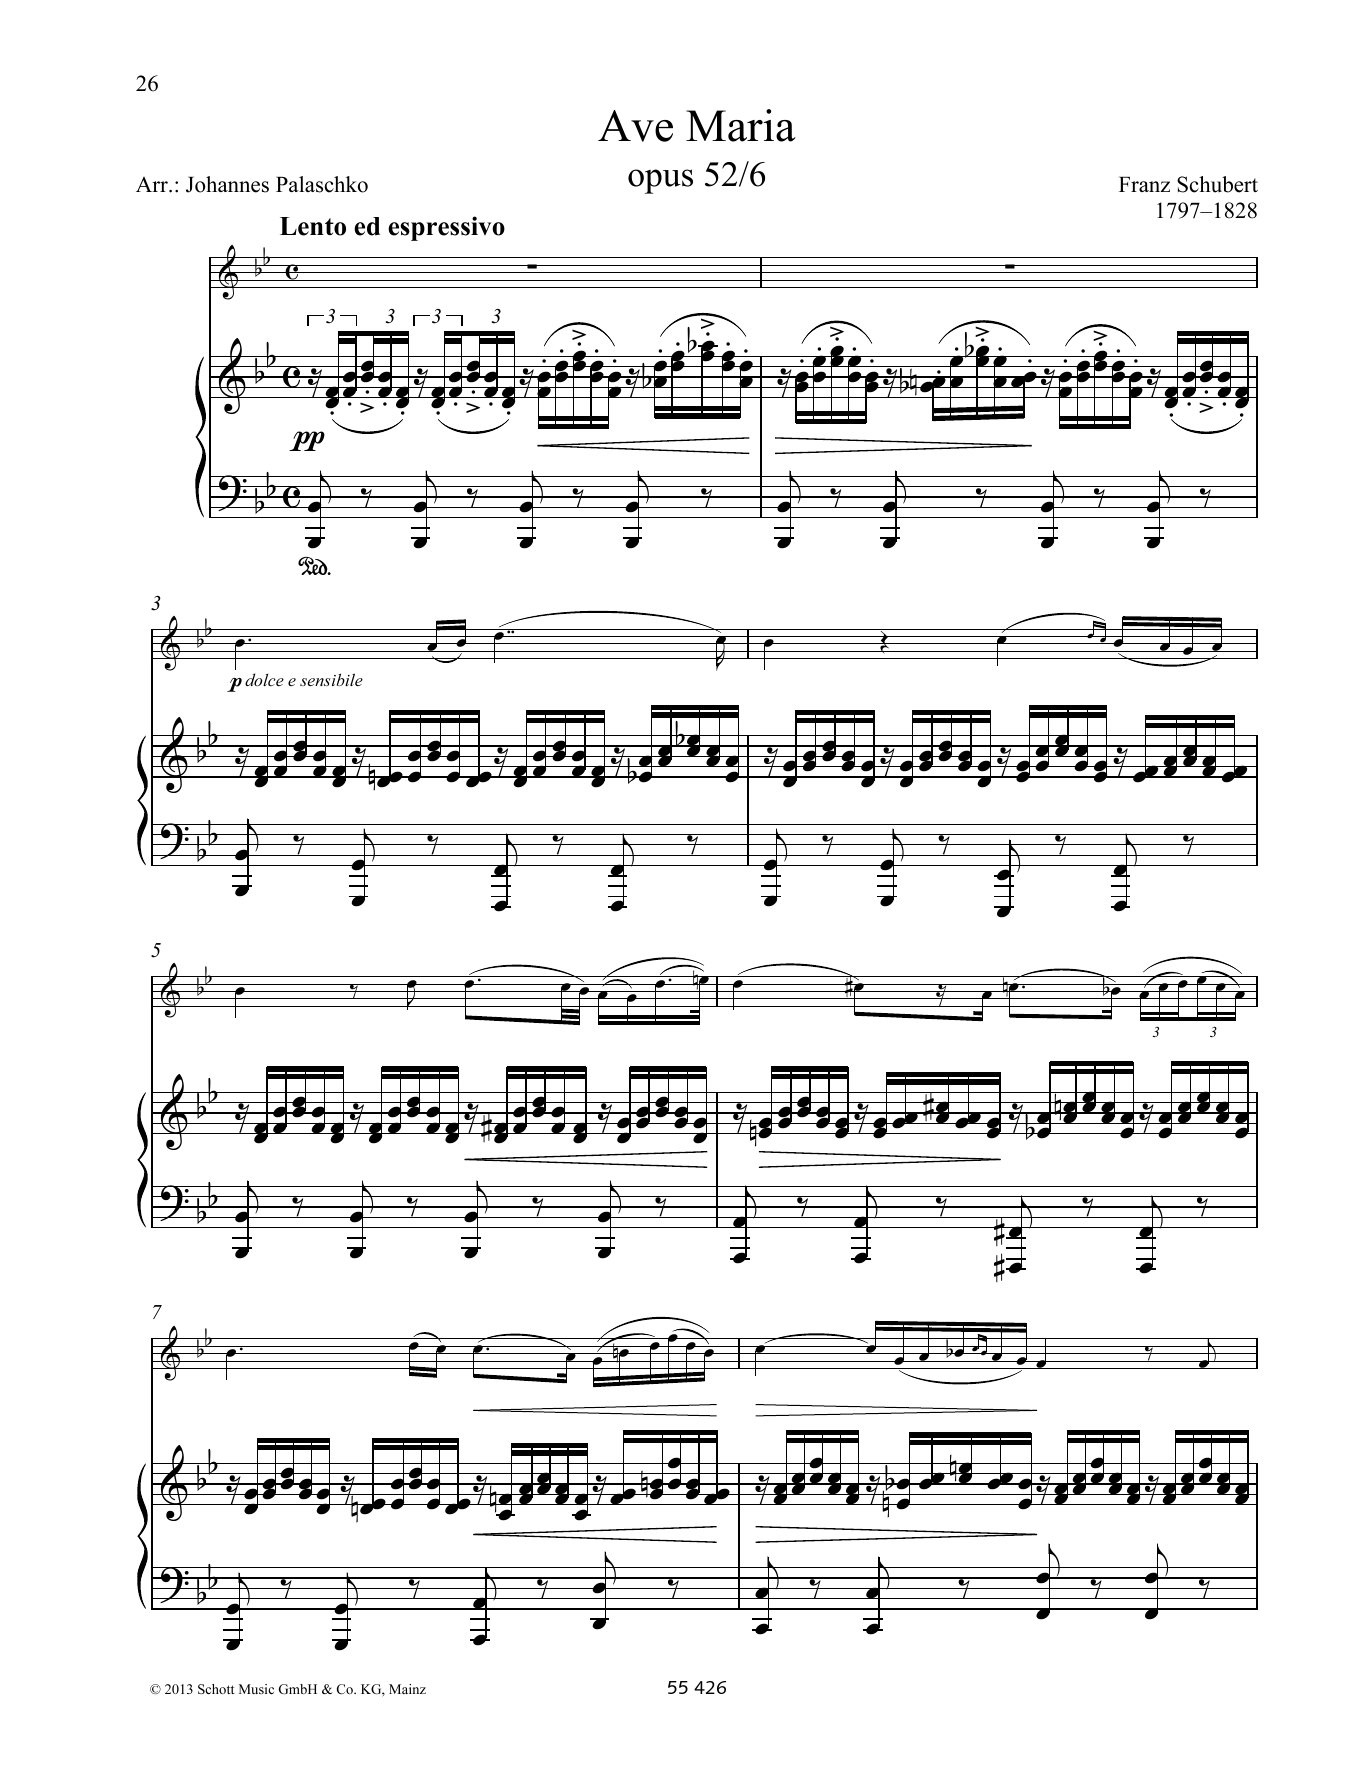 Download Franz Schubert Ave Maria Sheet Music